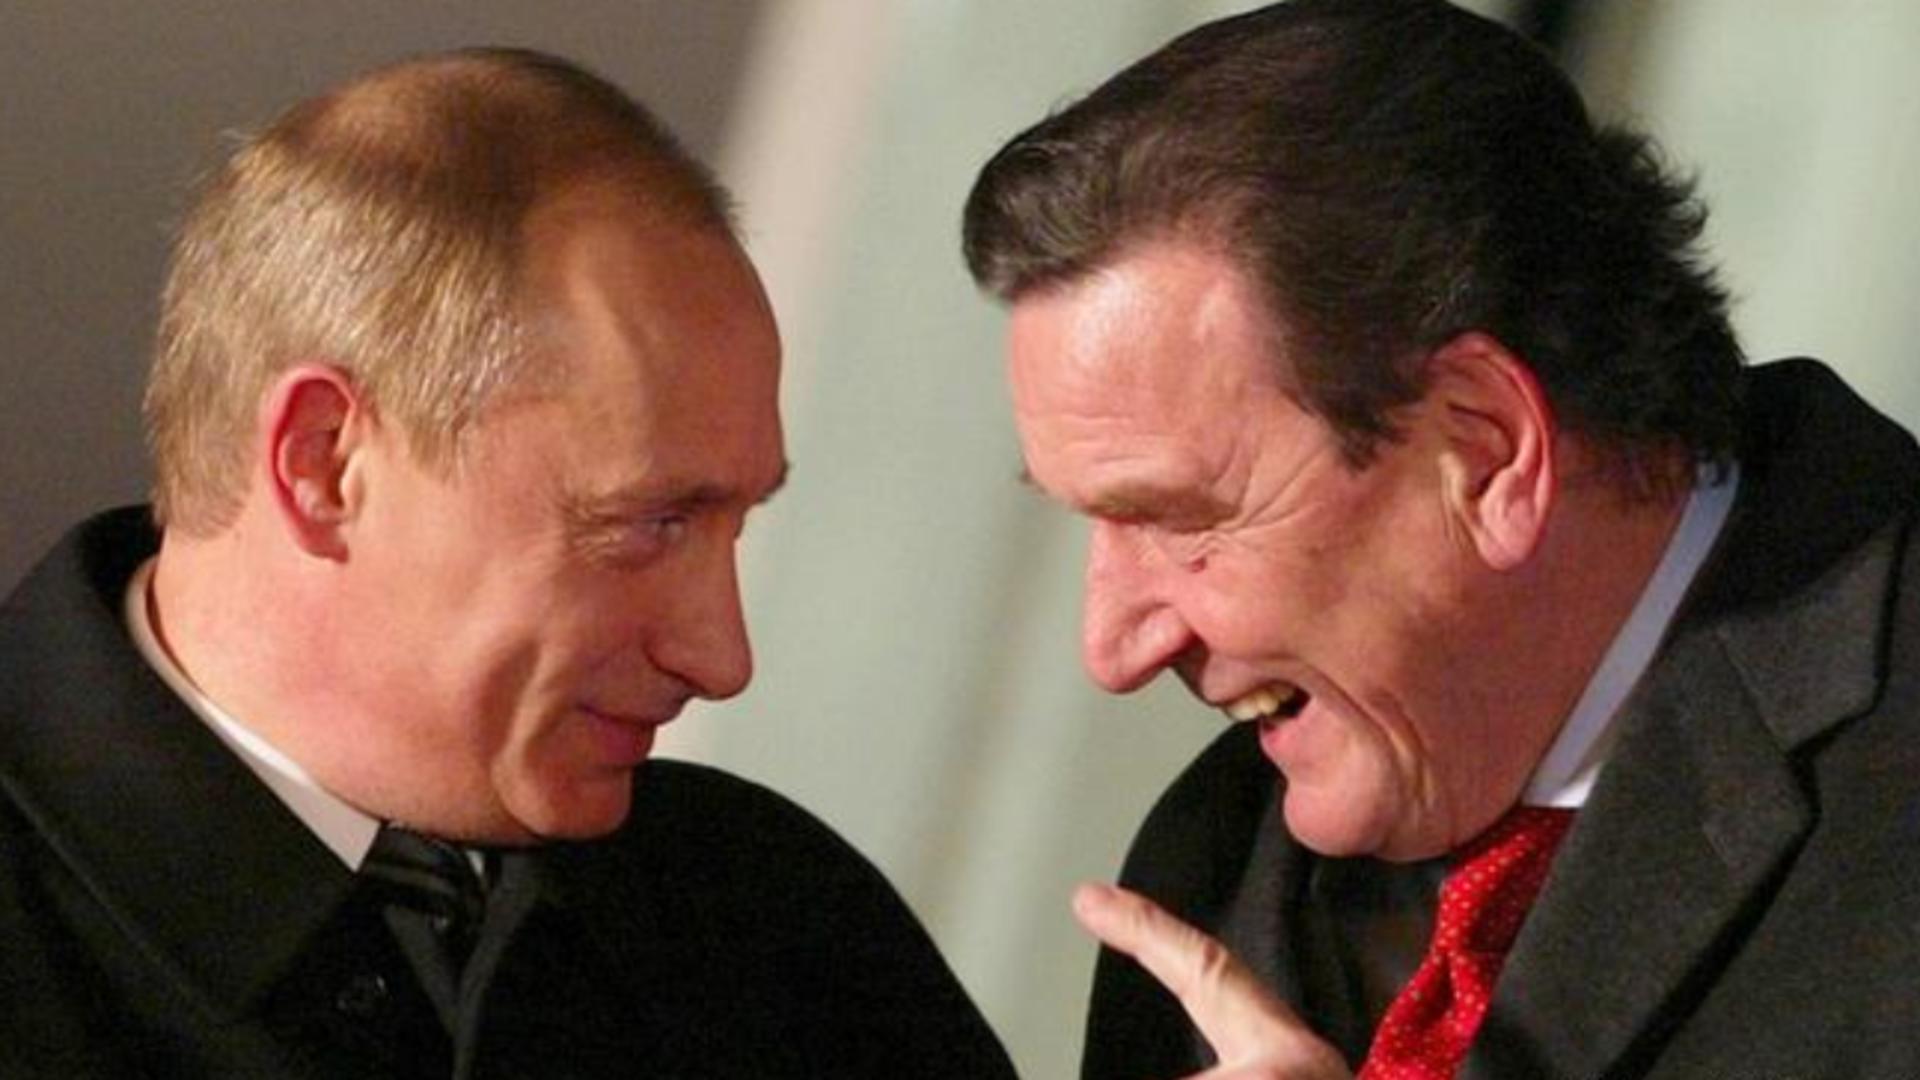 Gerhard Schröder intervine la Vladimir Putin pentru încetarea războiului din Ucraina Foto: DW.com